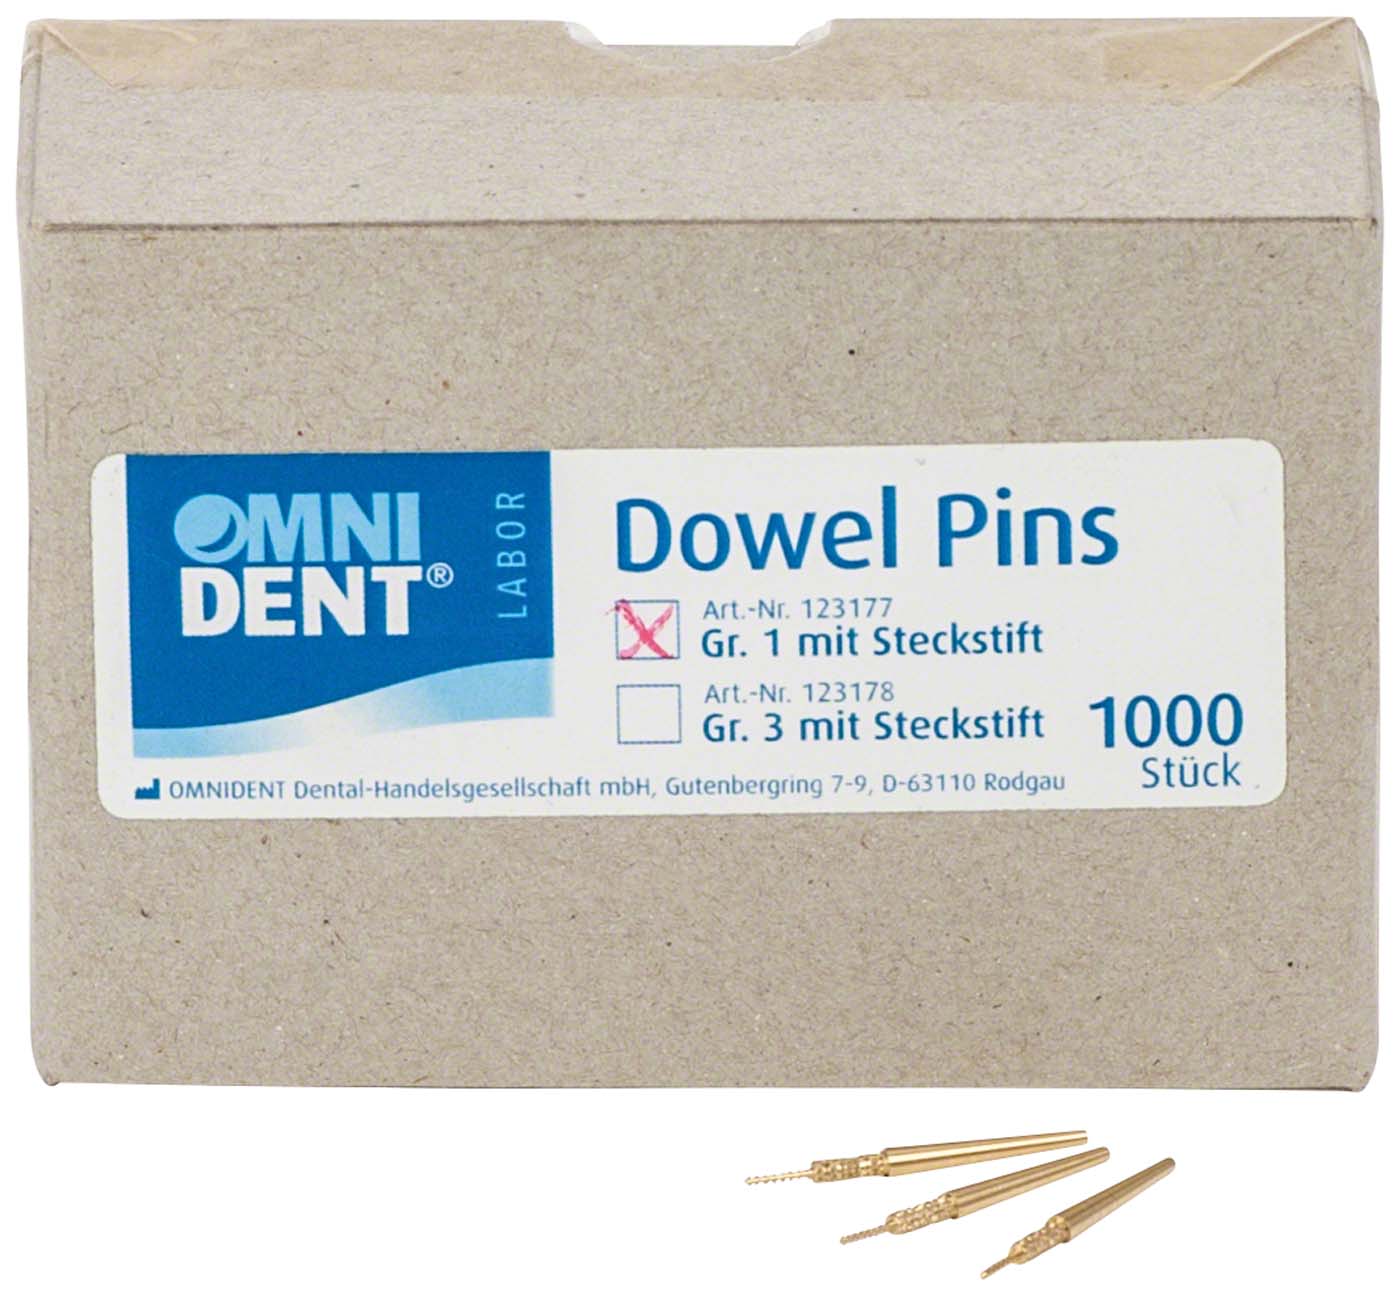 Dowel Pins mit Steckstift OMNIDENT